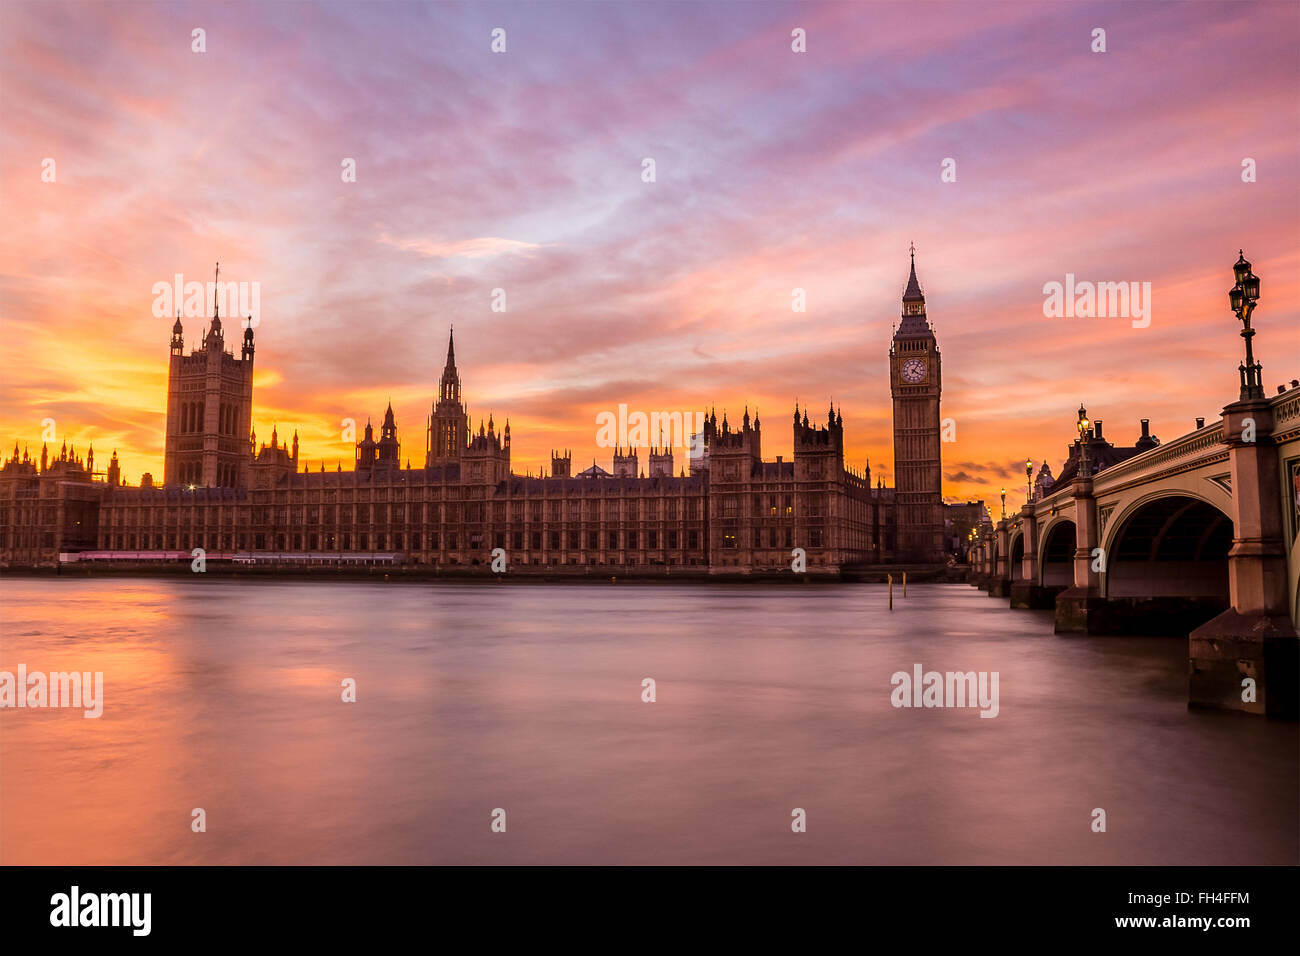 Le Palais de Westminster au coucher du soleil avec un beau ciel couleur Banque D'Images